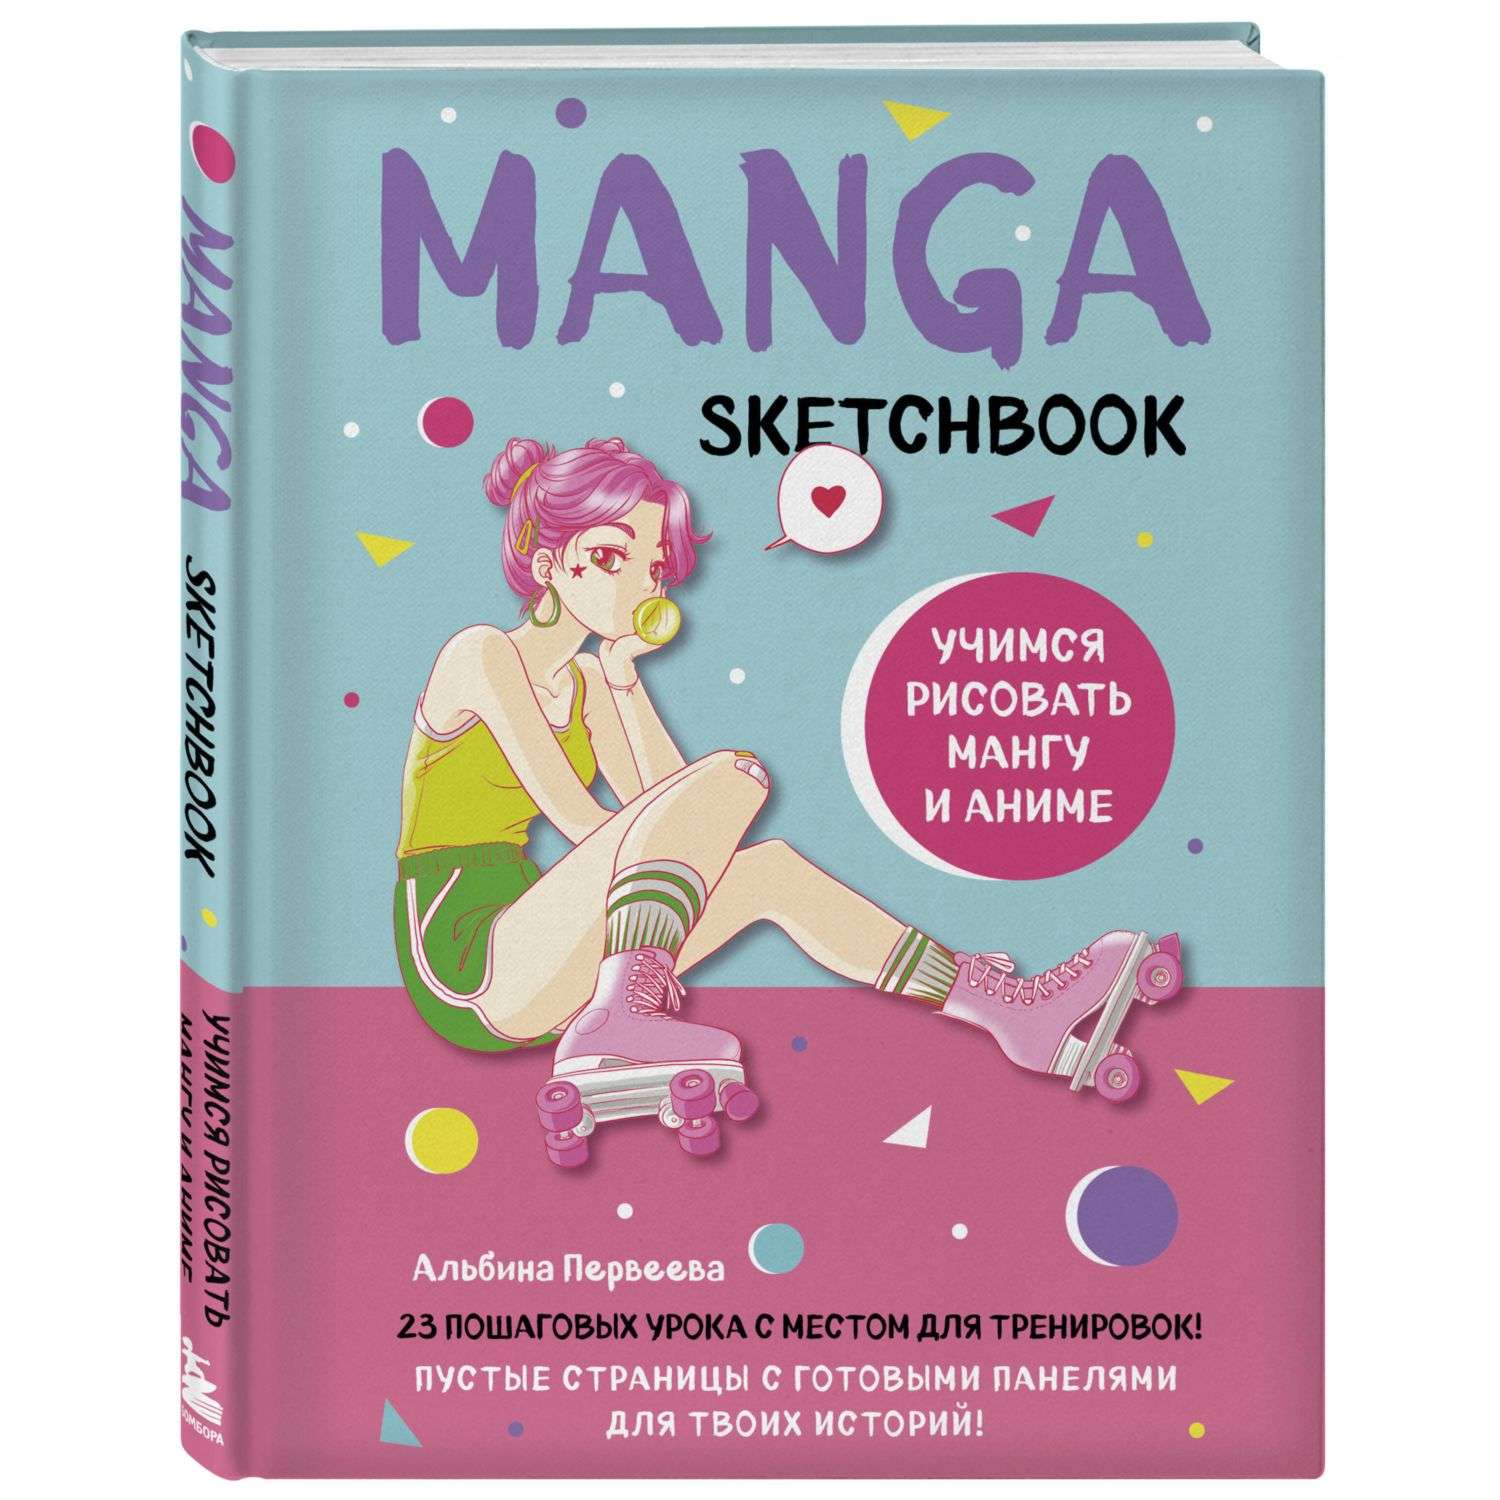 Книга Manga Sketchbook Учимся рисовать мангу и аниме 23 пошаговых урока с подробным описанием техник и приемов - фото 1